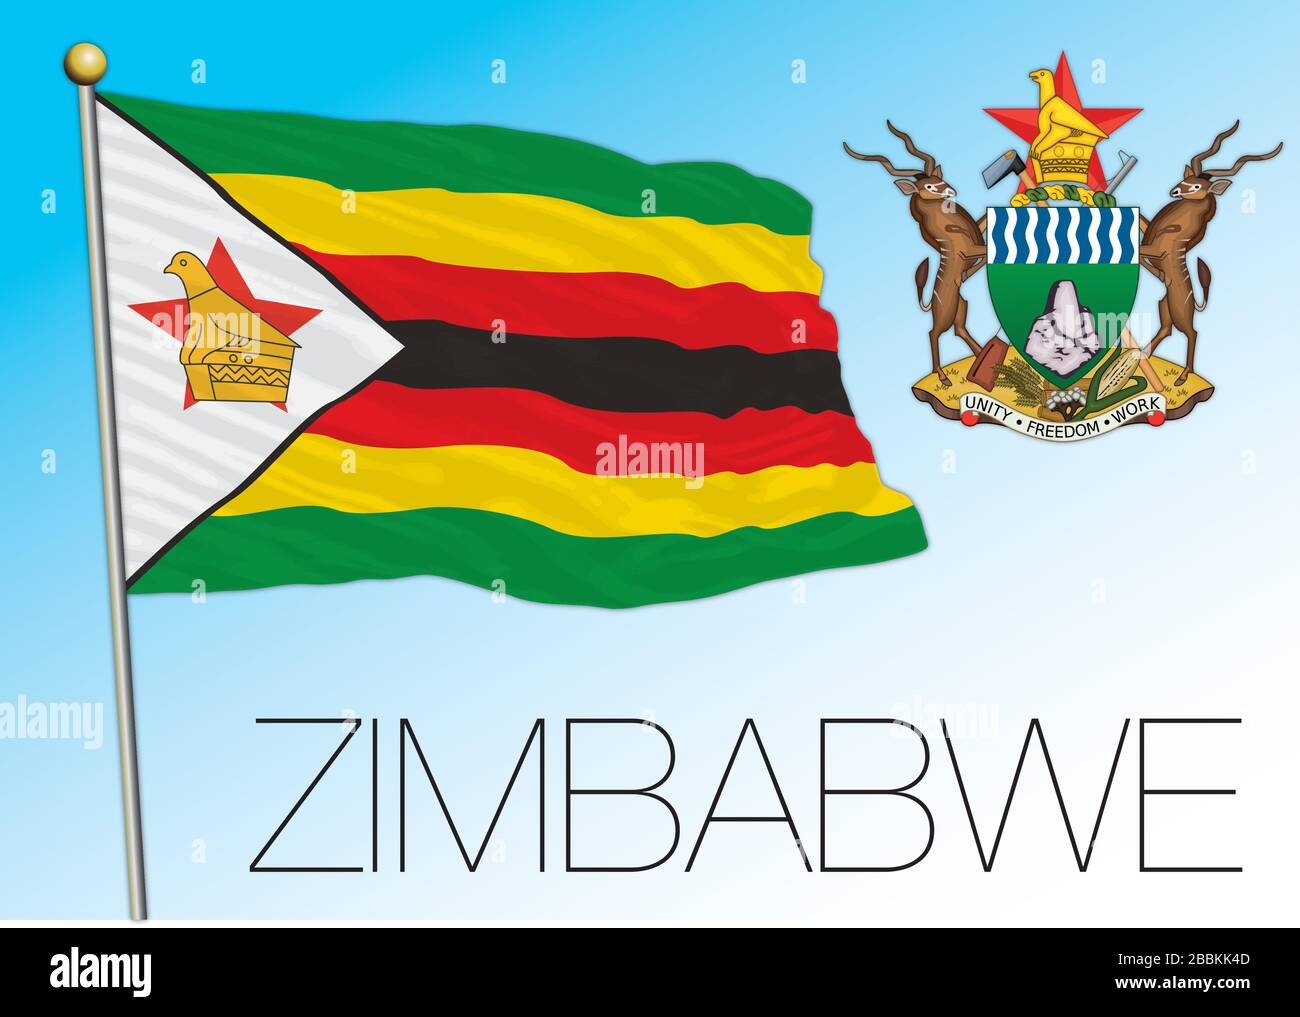 Zimbabwe drapeau national officiel et armoiries, pays africain, illustration vectorielle Illustration de Vecteur